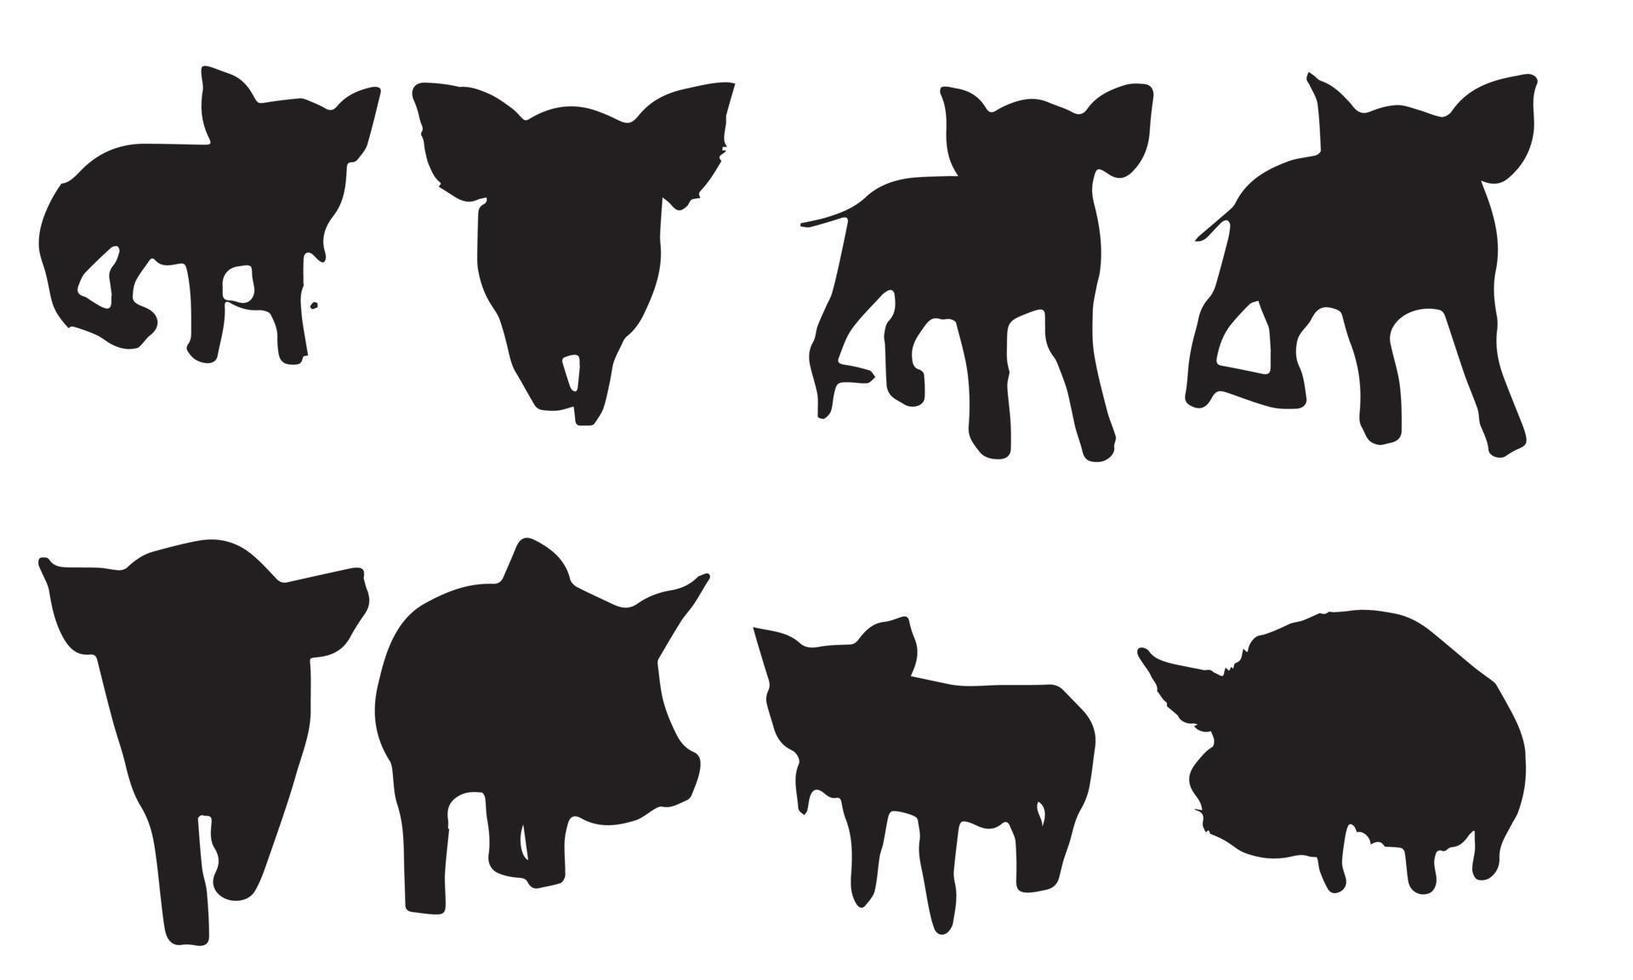 coleção de design de ilustração vetorial de porco preto e branco vetor